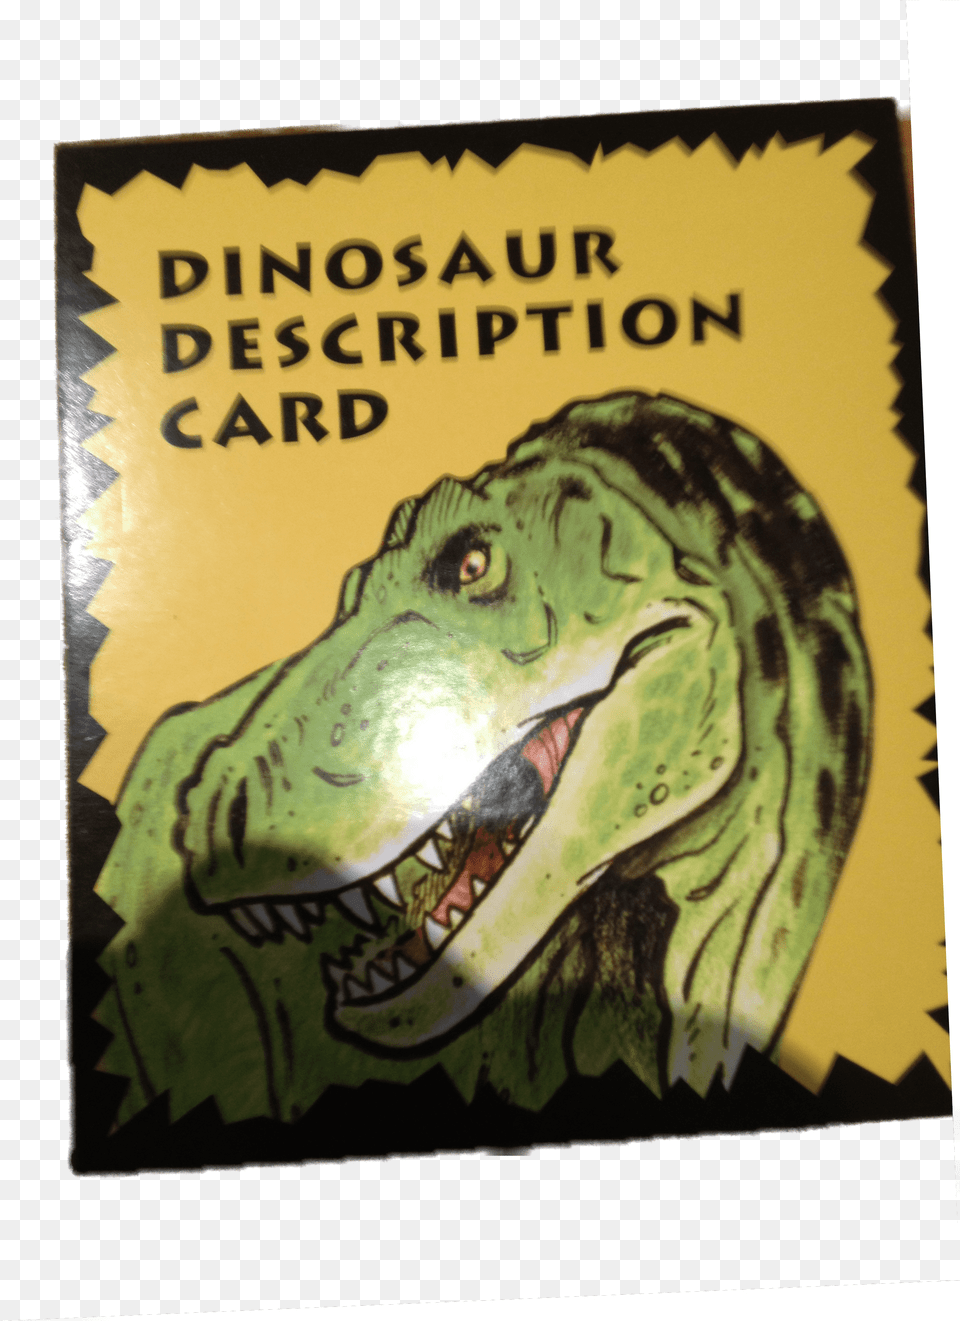 Supplies Dinosaur Games, Animal, Reptile, T-rex, Lion Free Png Download